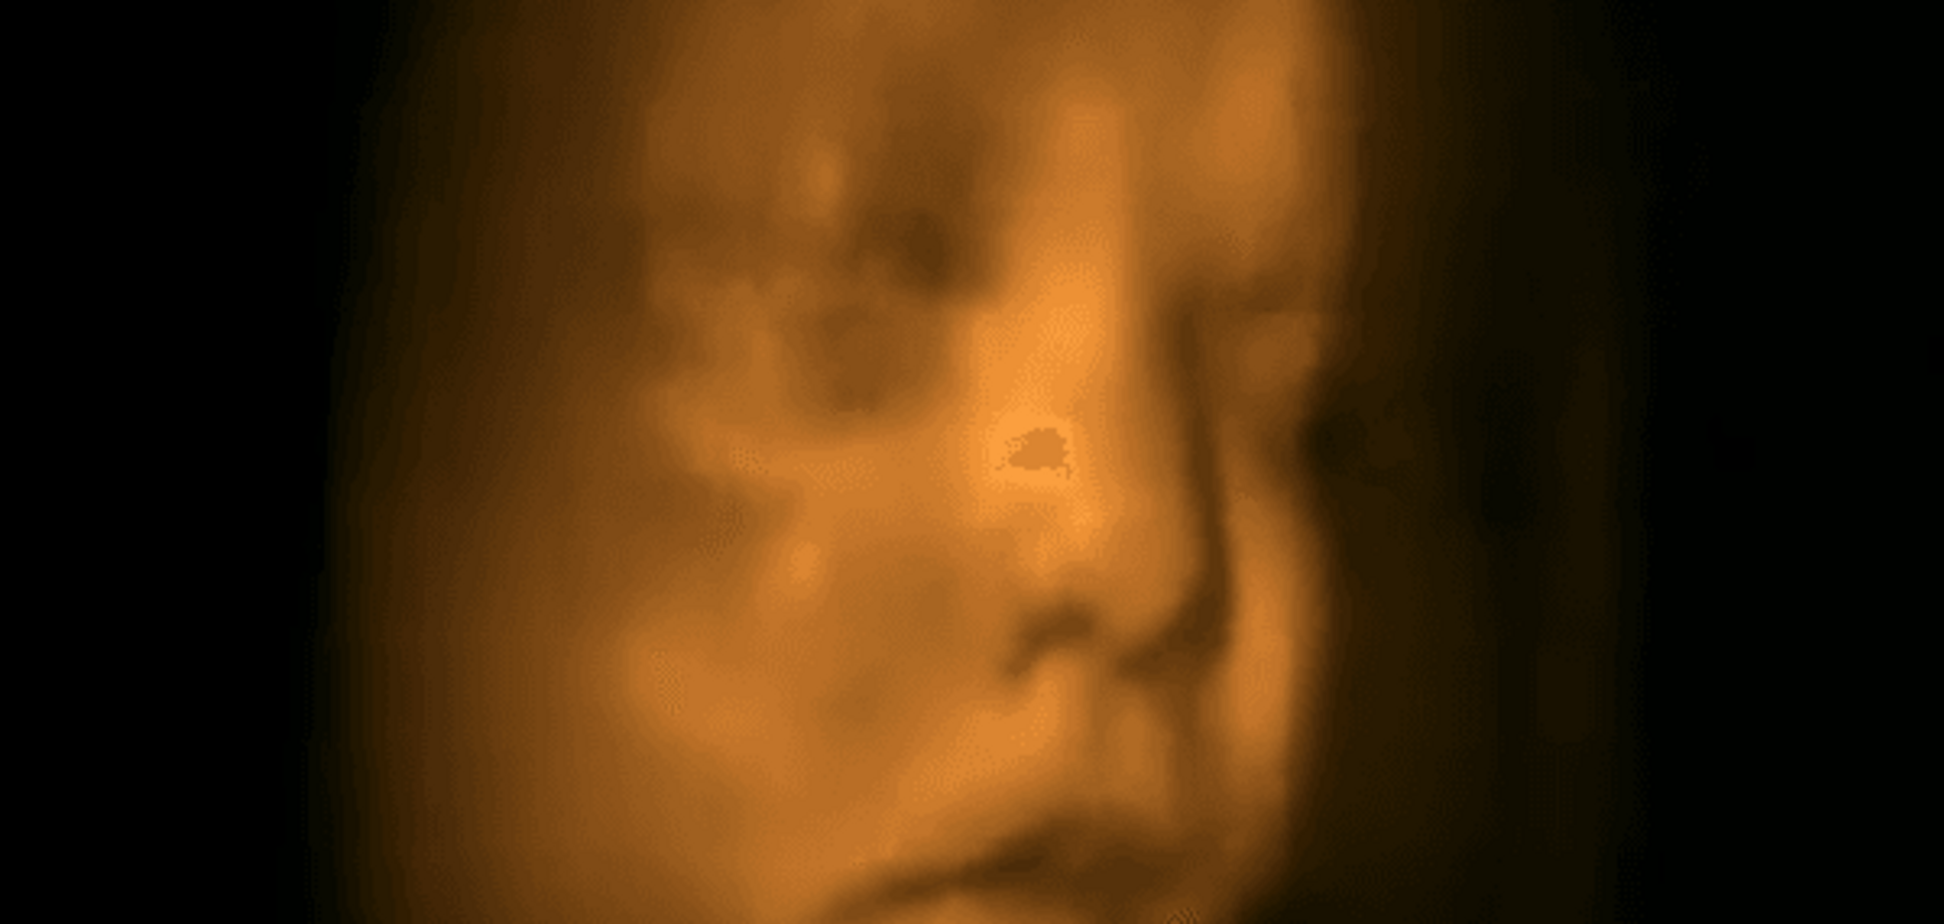 Вы будете в шоке: сеть взорвало видео танца ребенка в утробе матери